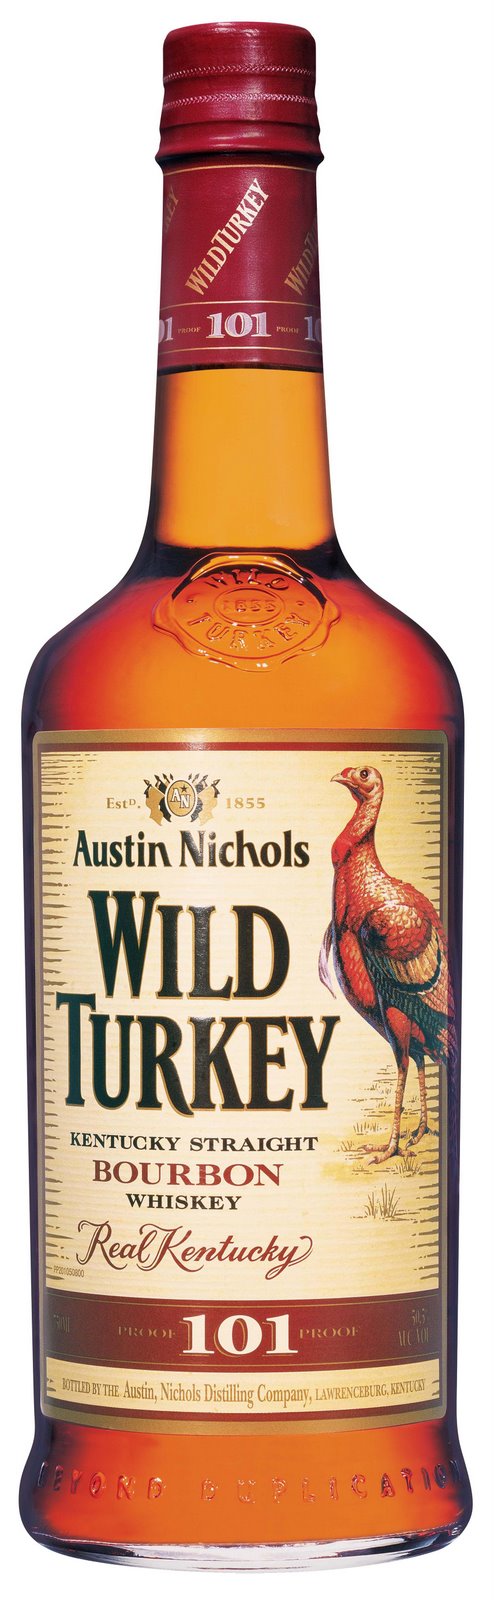 Wild-Turkey-Bourbon-Whiskey-101-724687.jpg